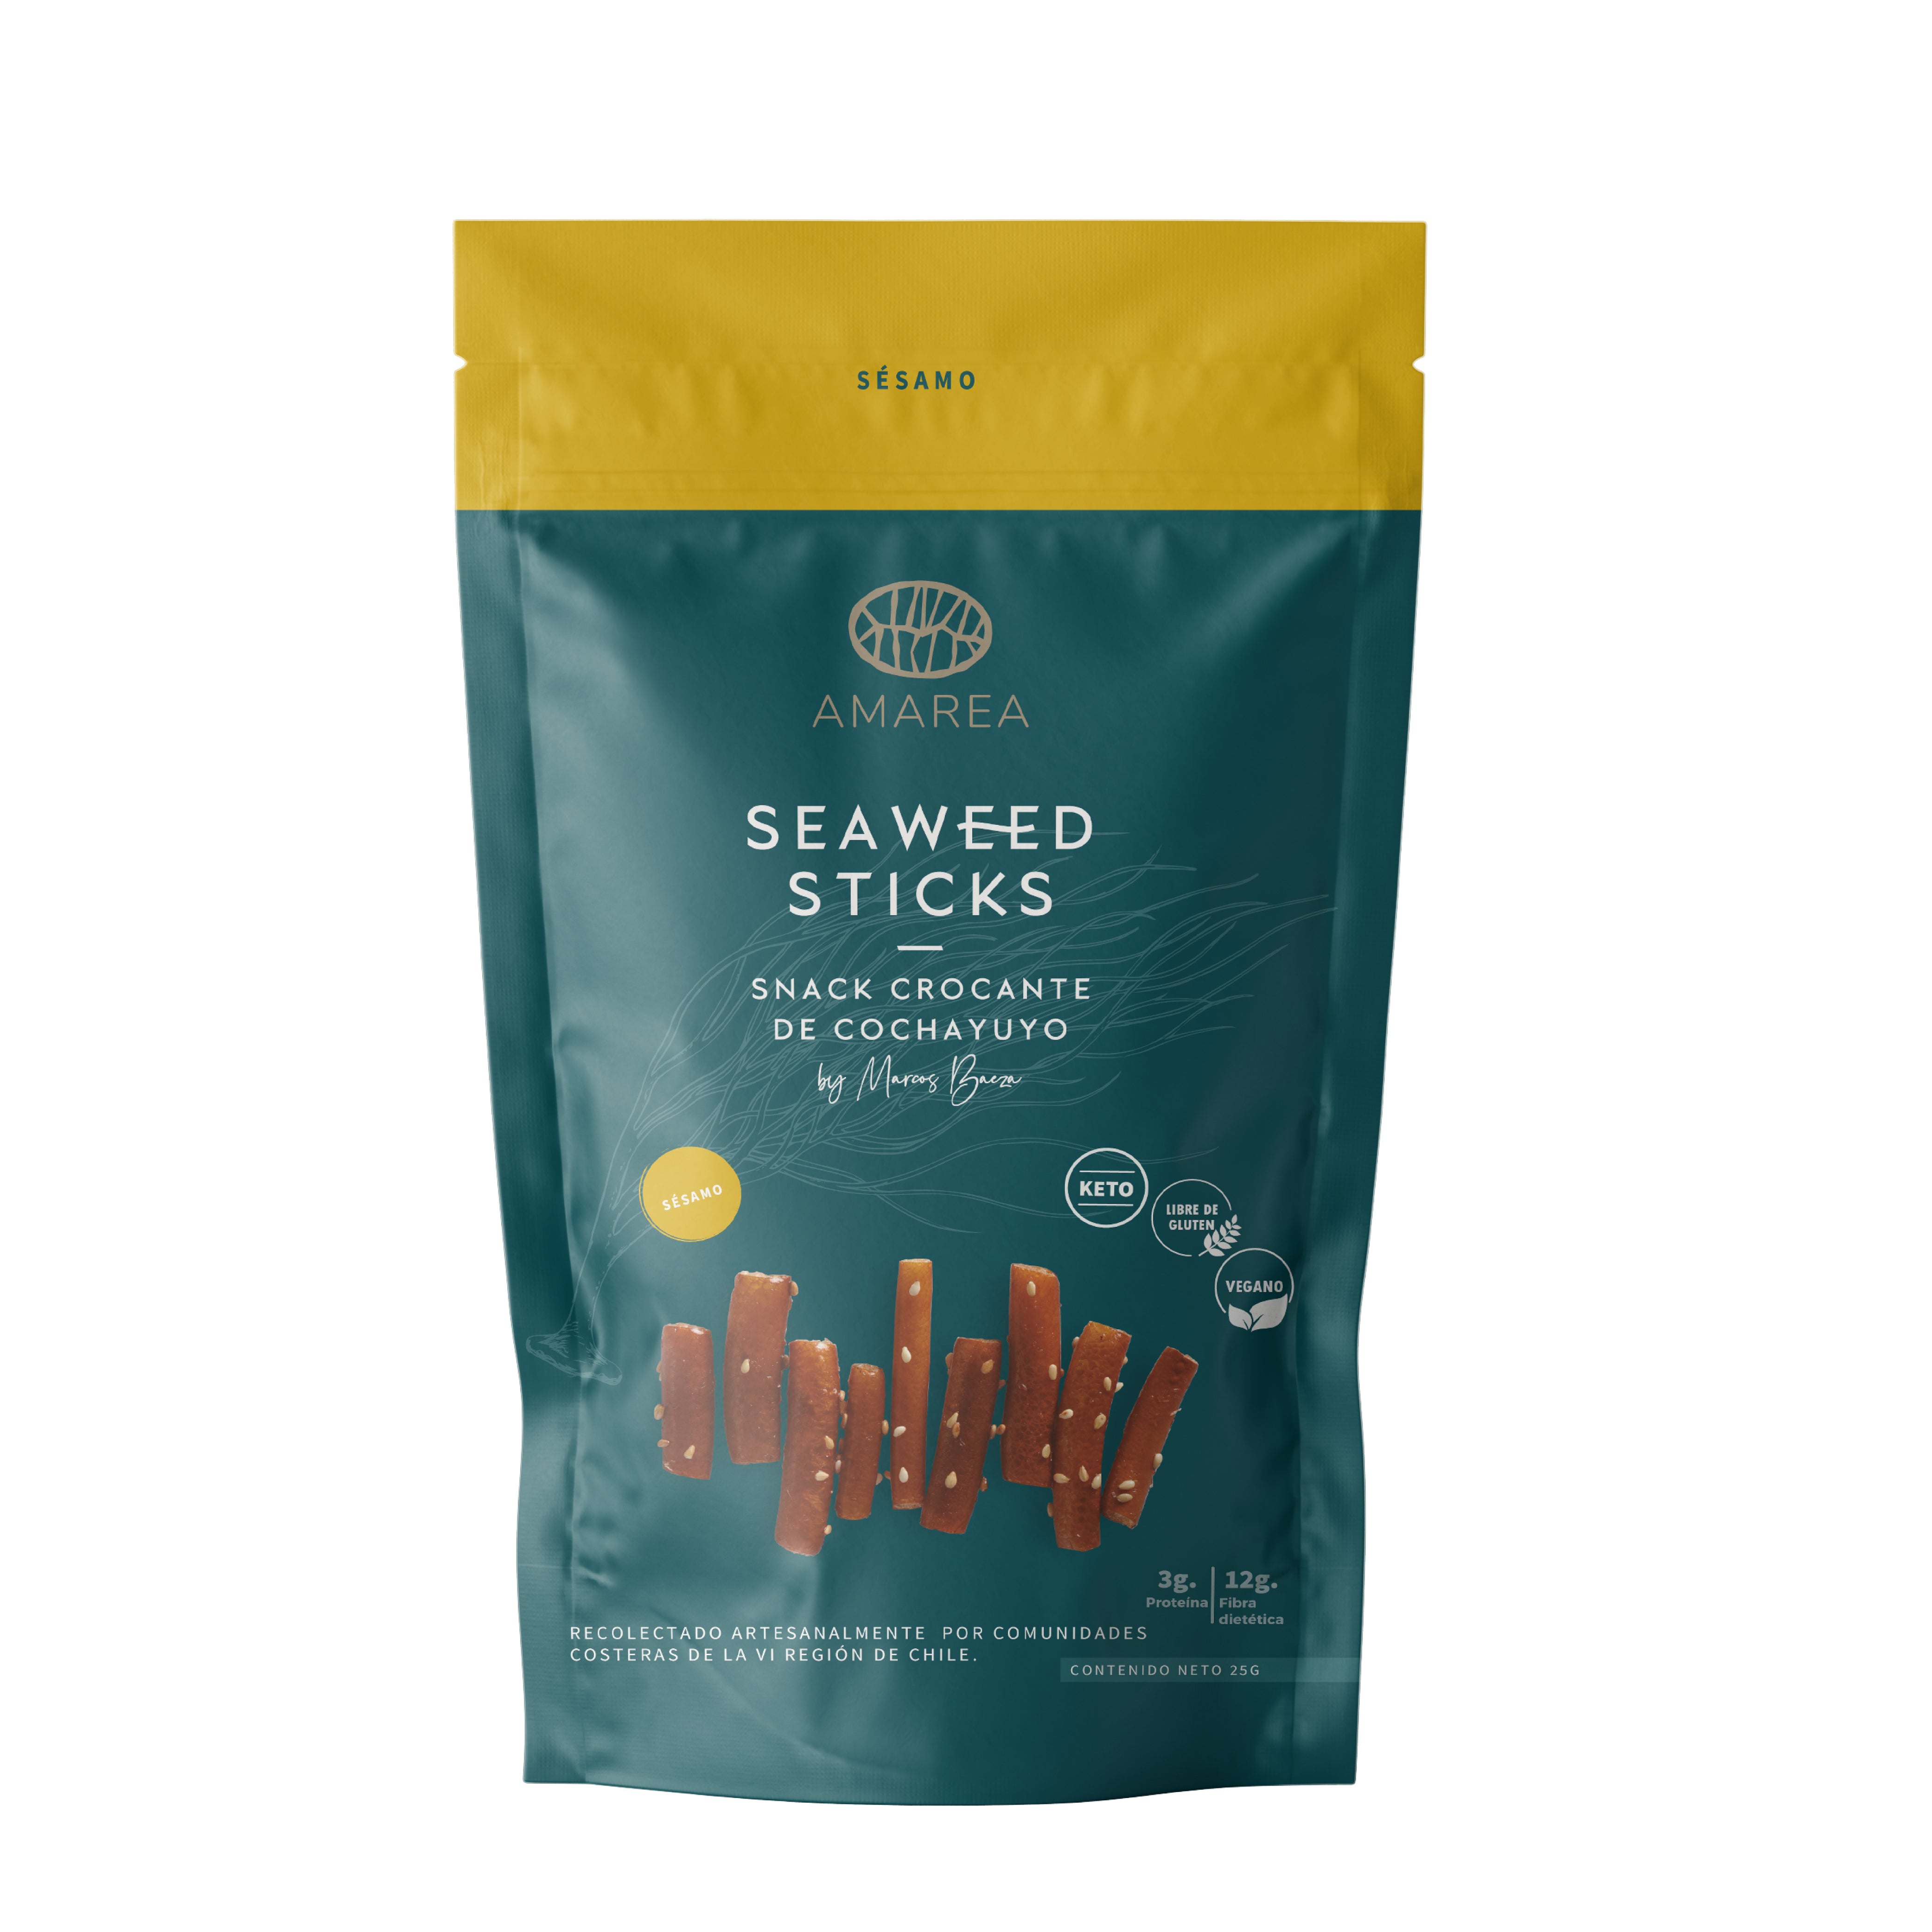 Sticks - Sesame